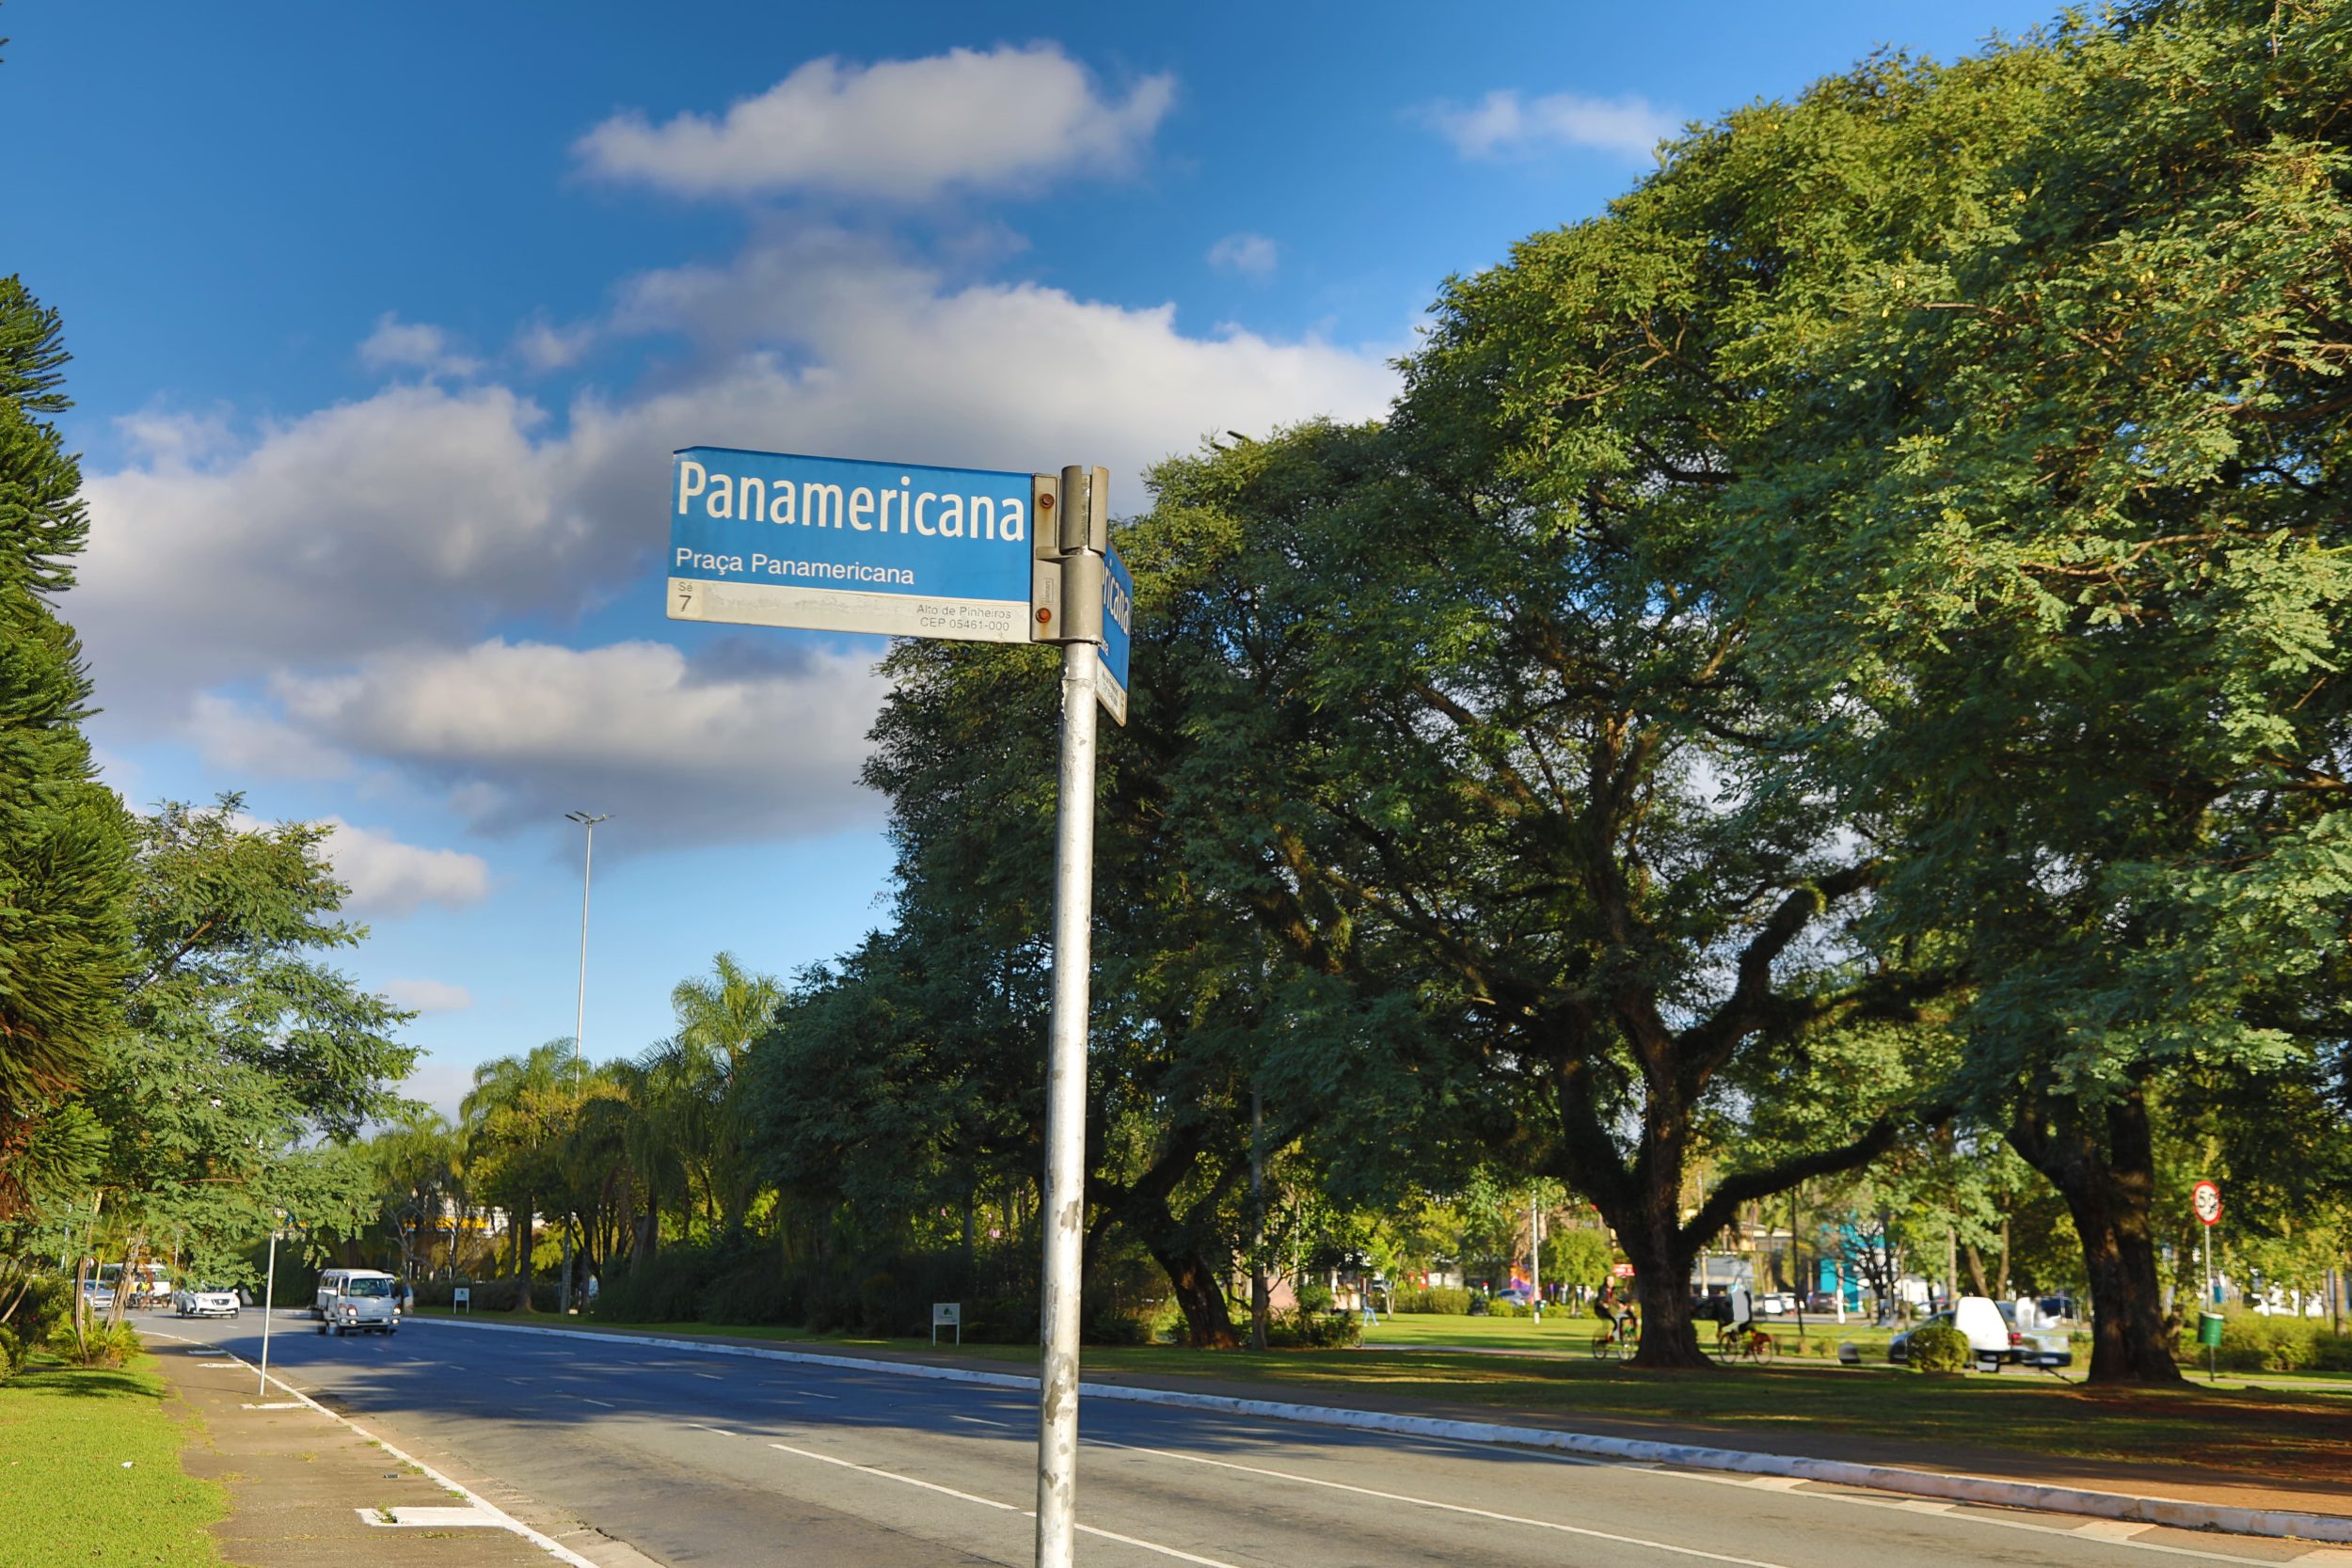 Praça Panamericana